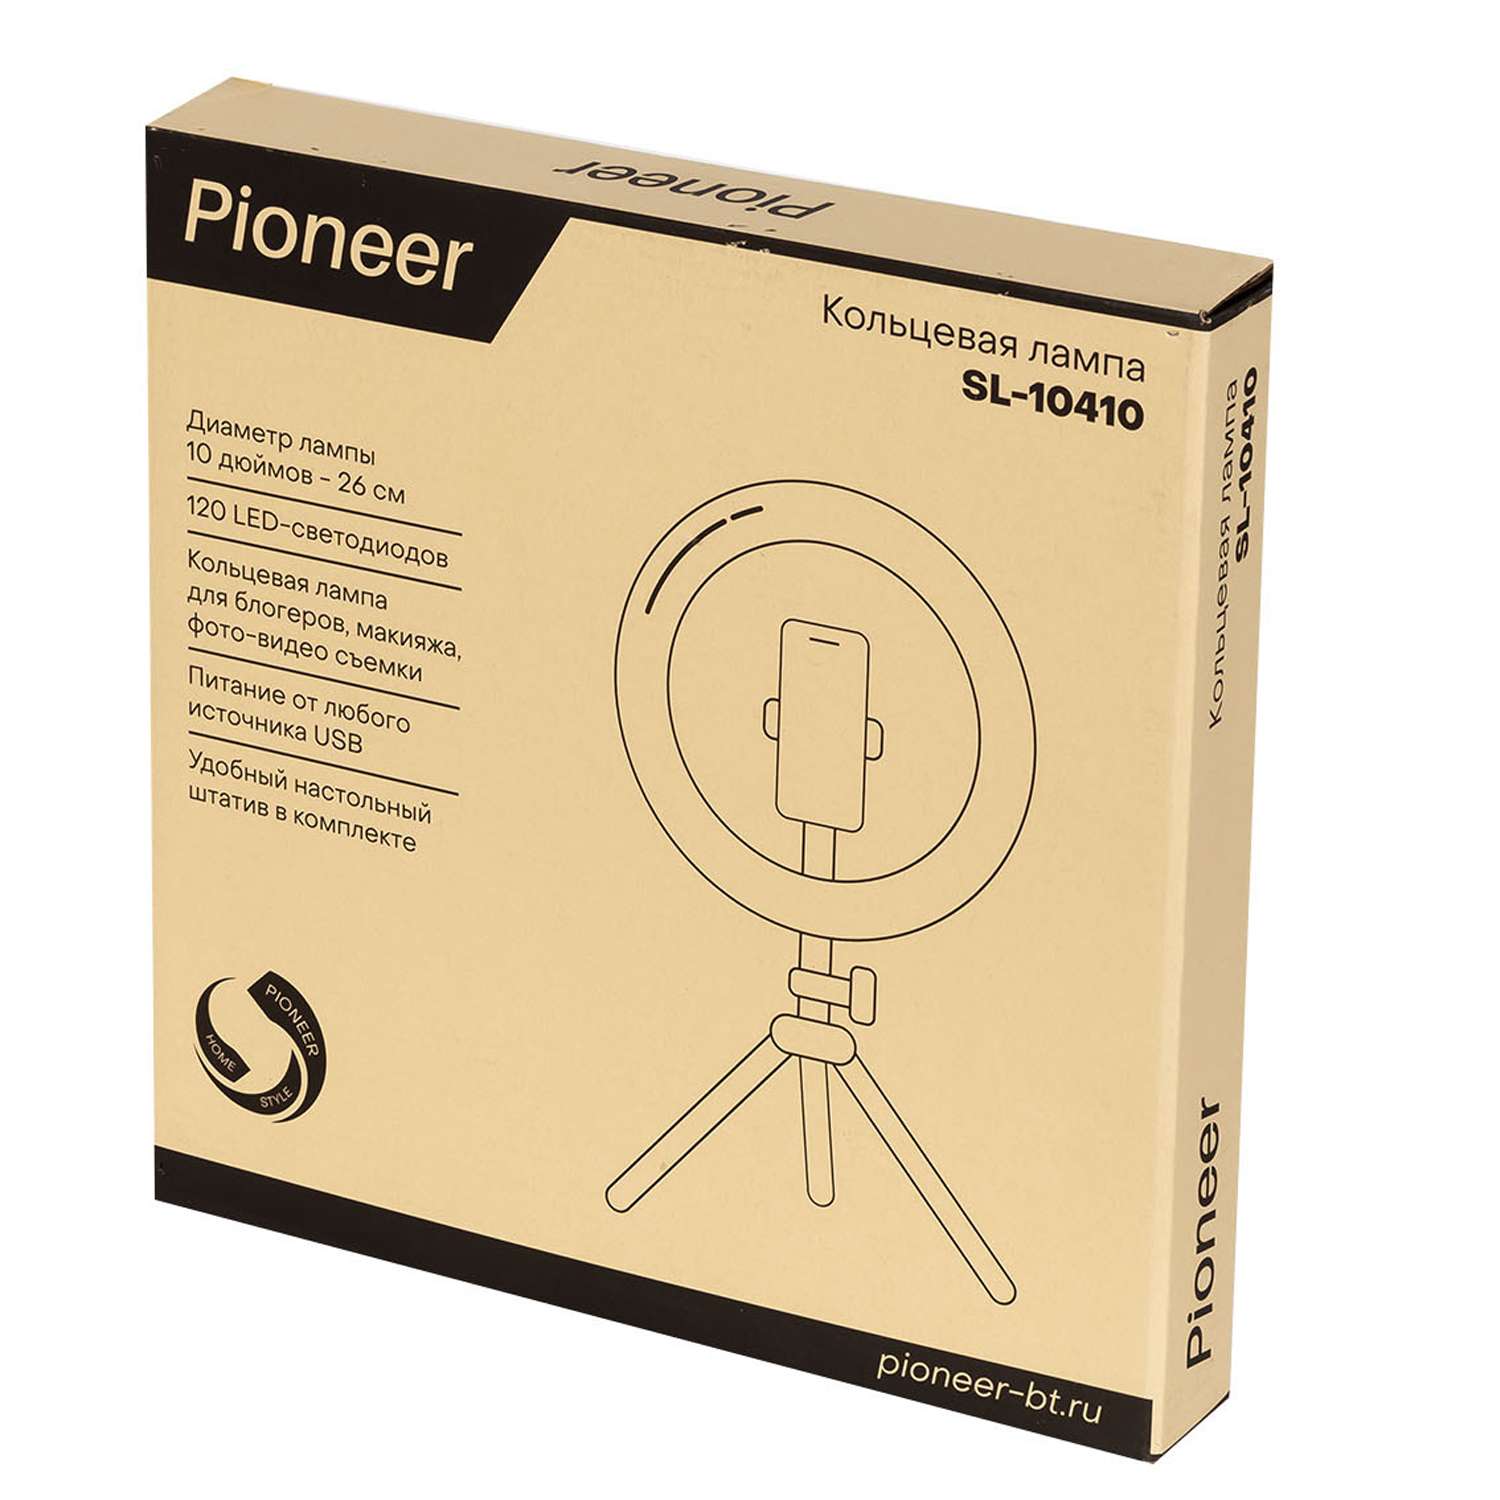 Кольцевая лампа Pioneer с настольным штативом черный - фото 4